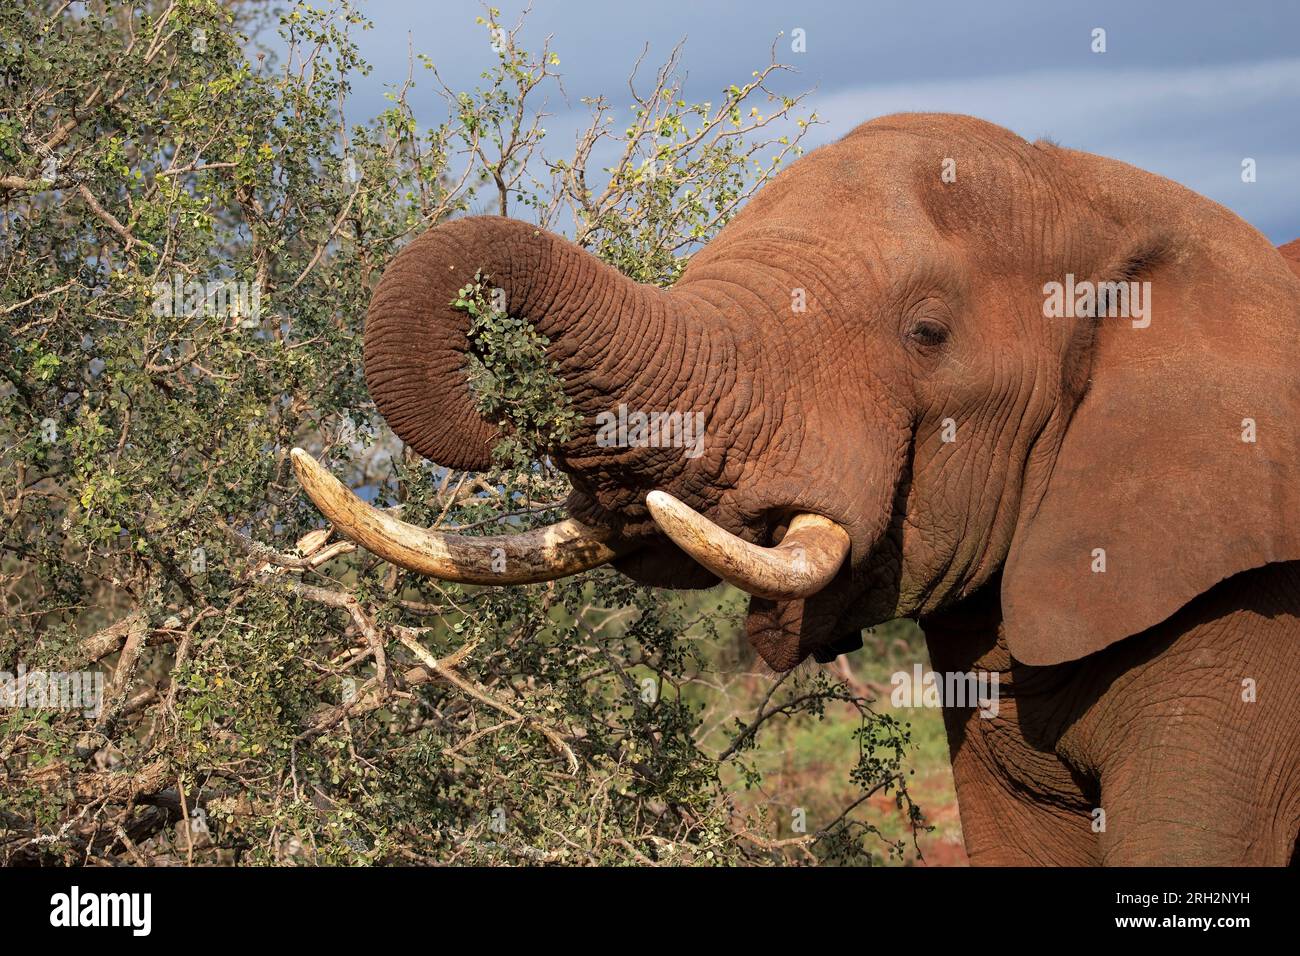 Kopfschuss des großen afrikanischen Bullen Elefant Loxodonta africana mit seinem LKW, um Akazienzweige aus dem afrikanischen Gestrüpp zu reißen Stockfoto